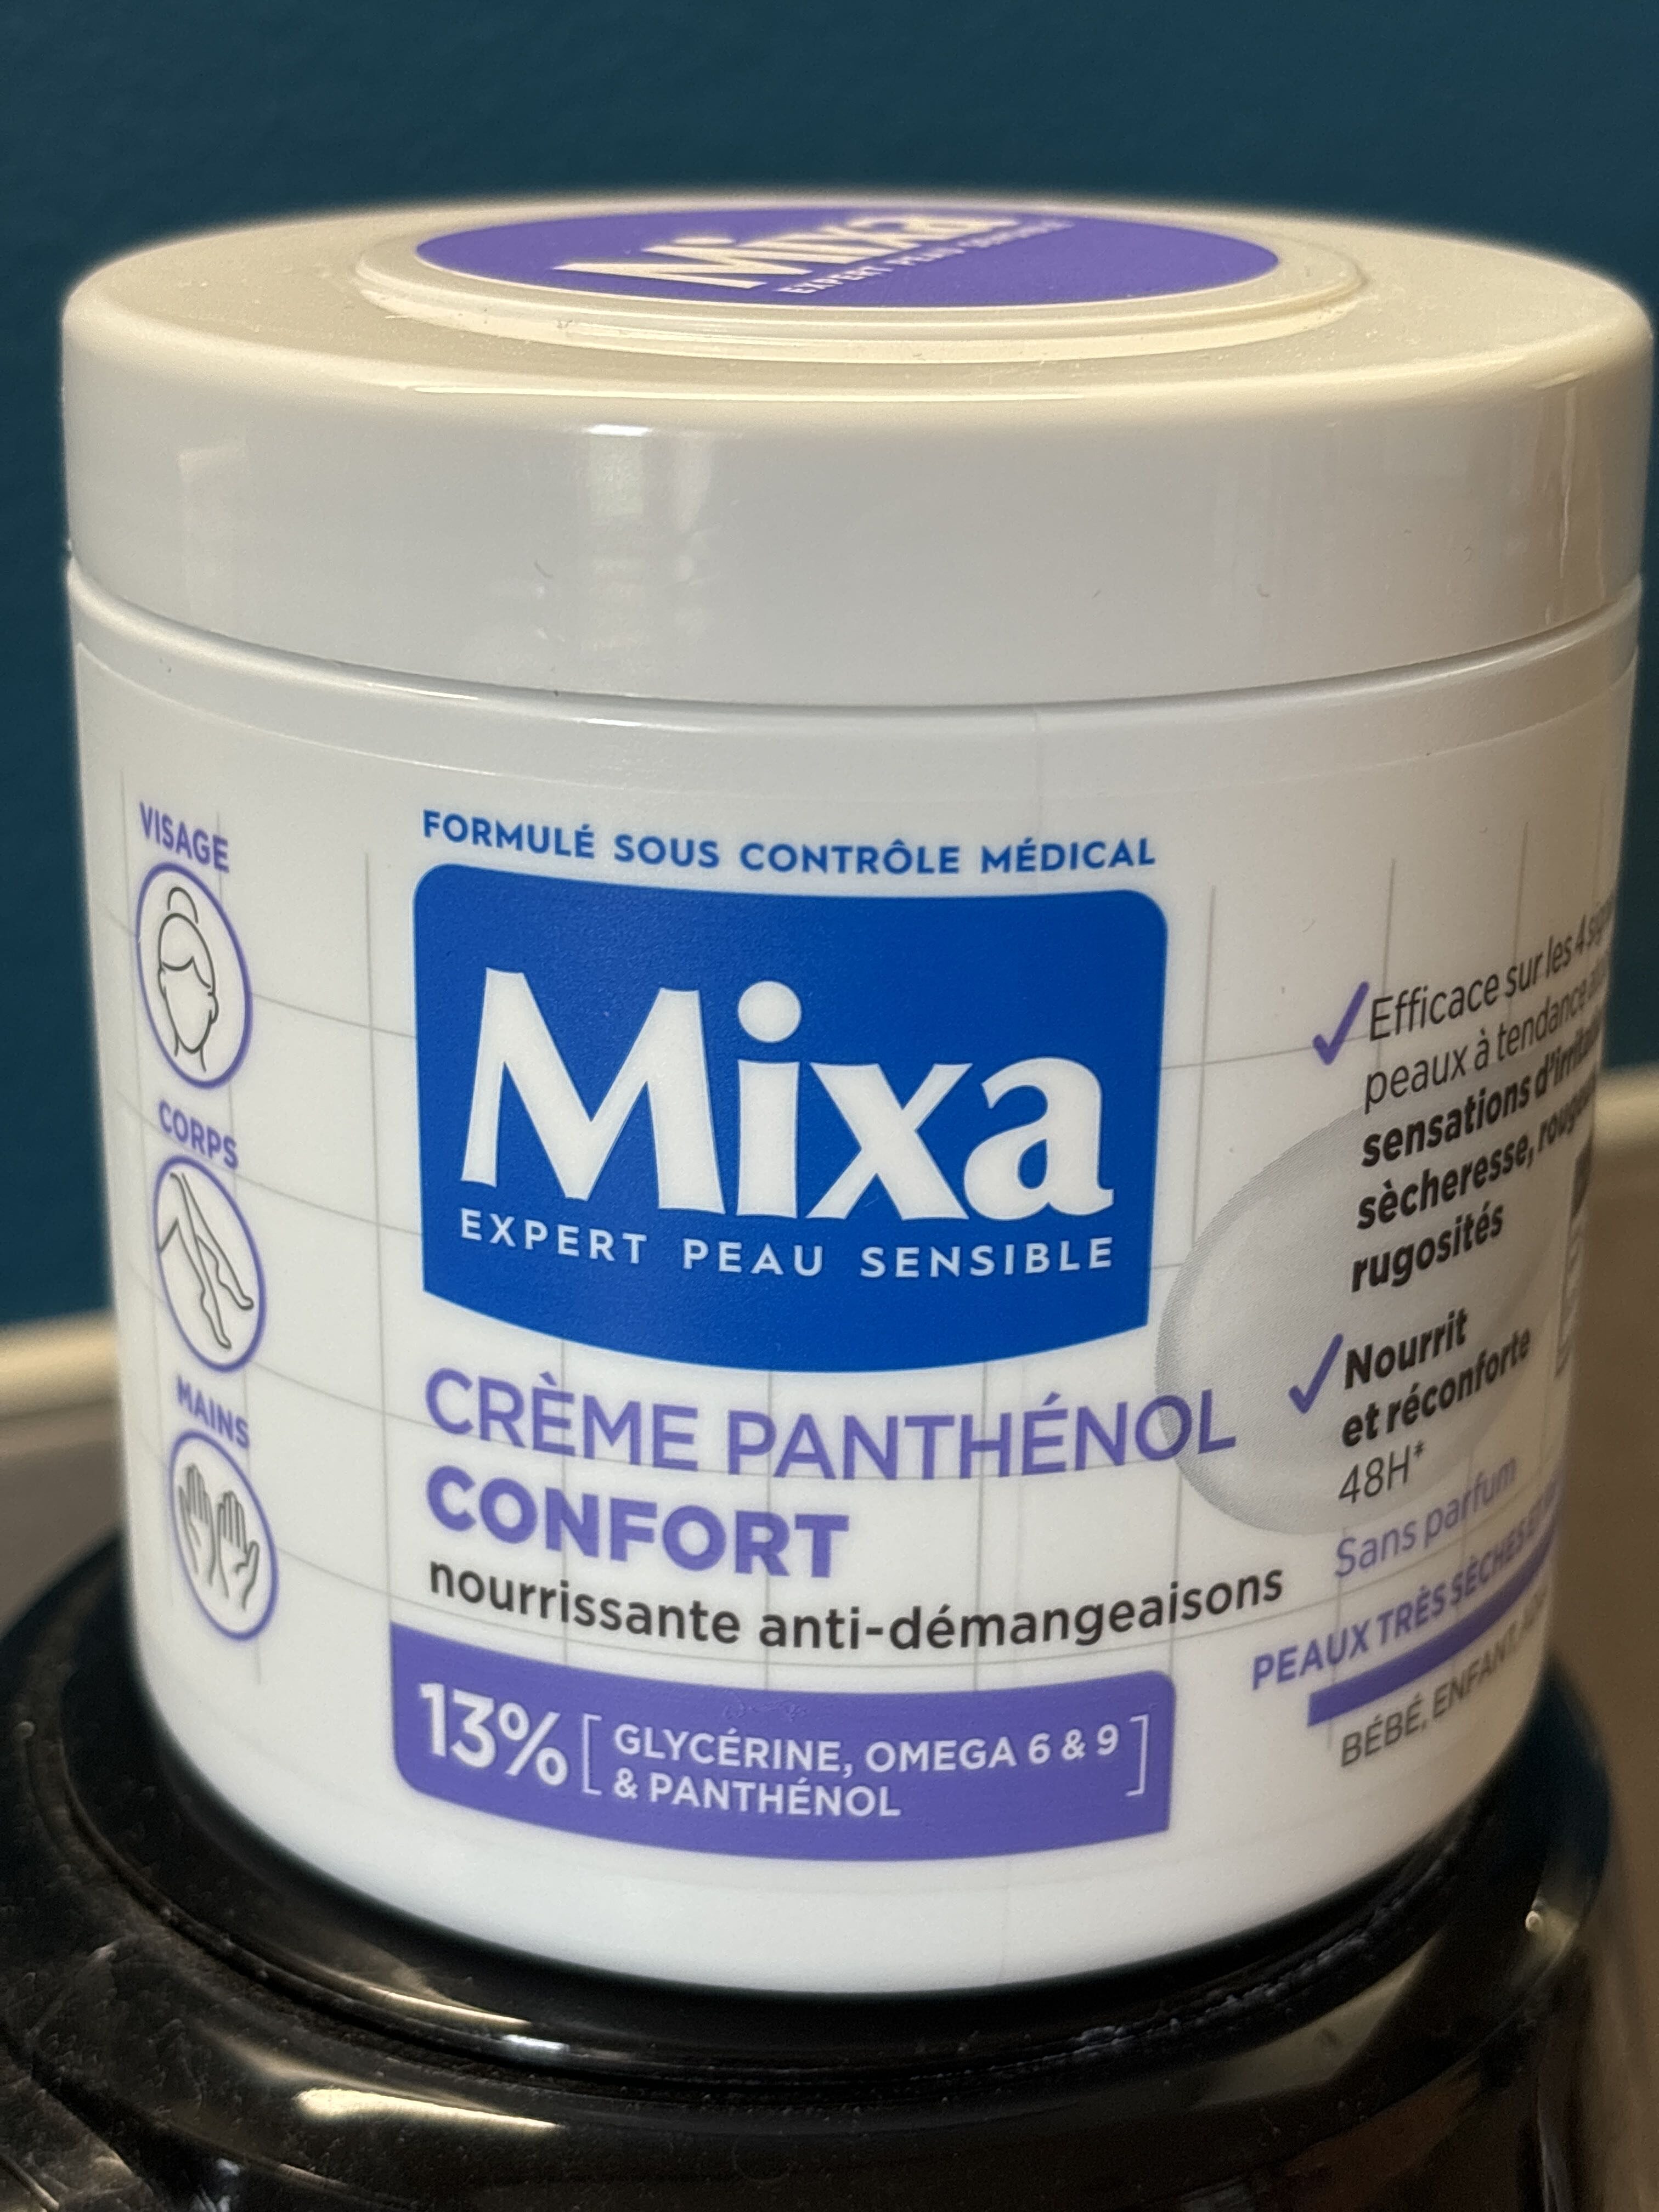 Mixa expert peau sensible - Produktas - fr